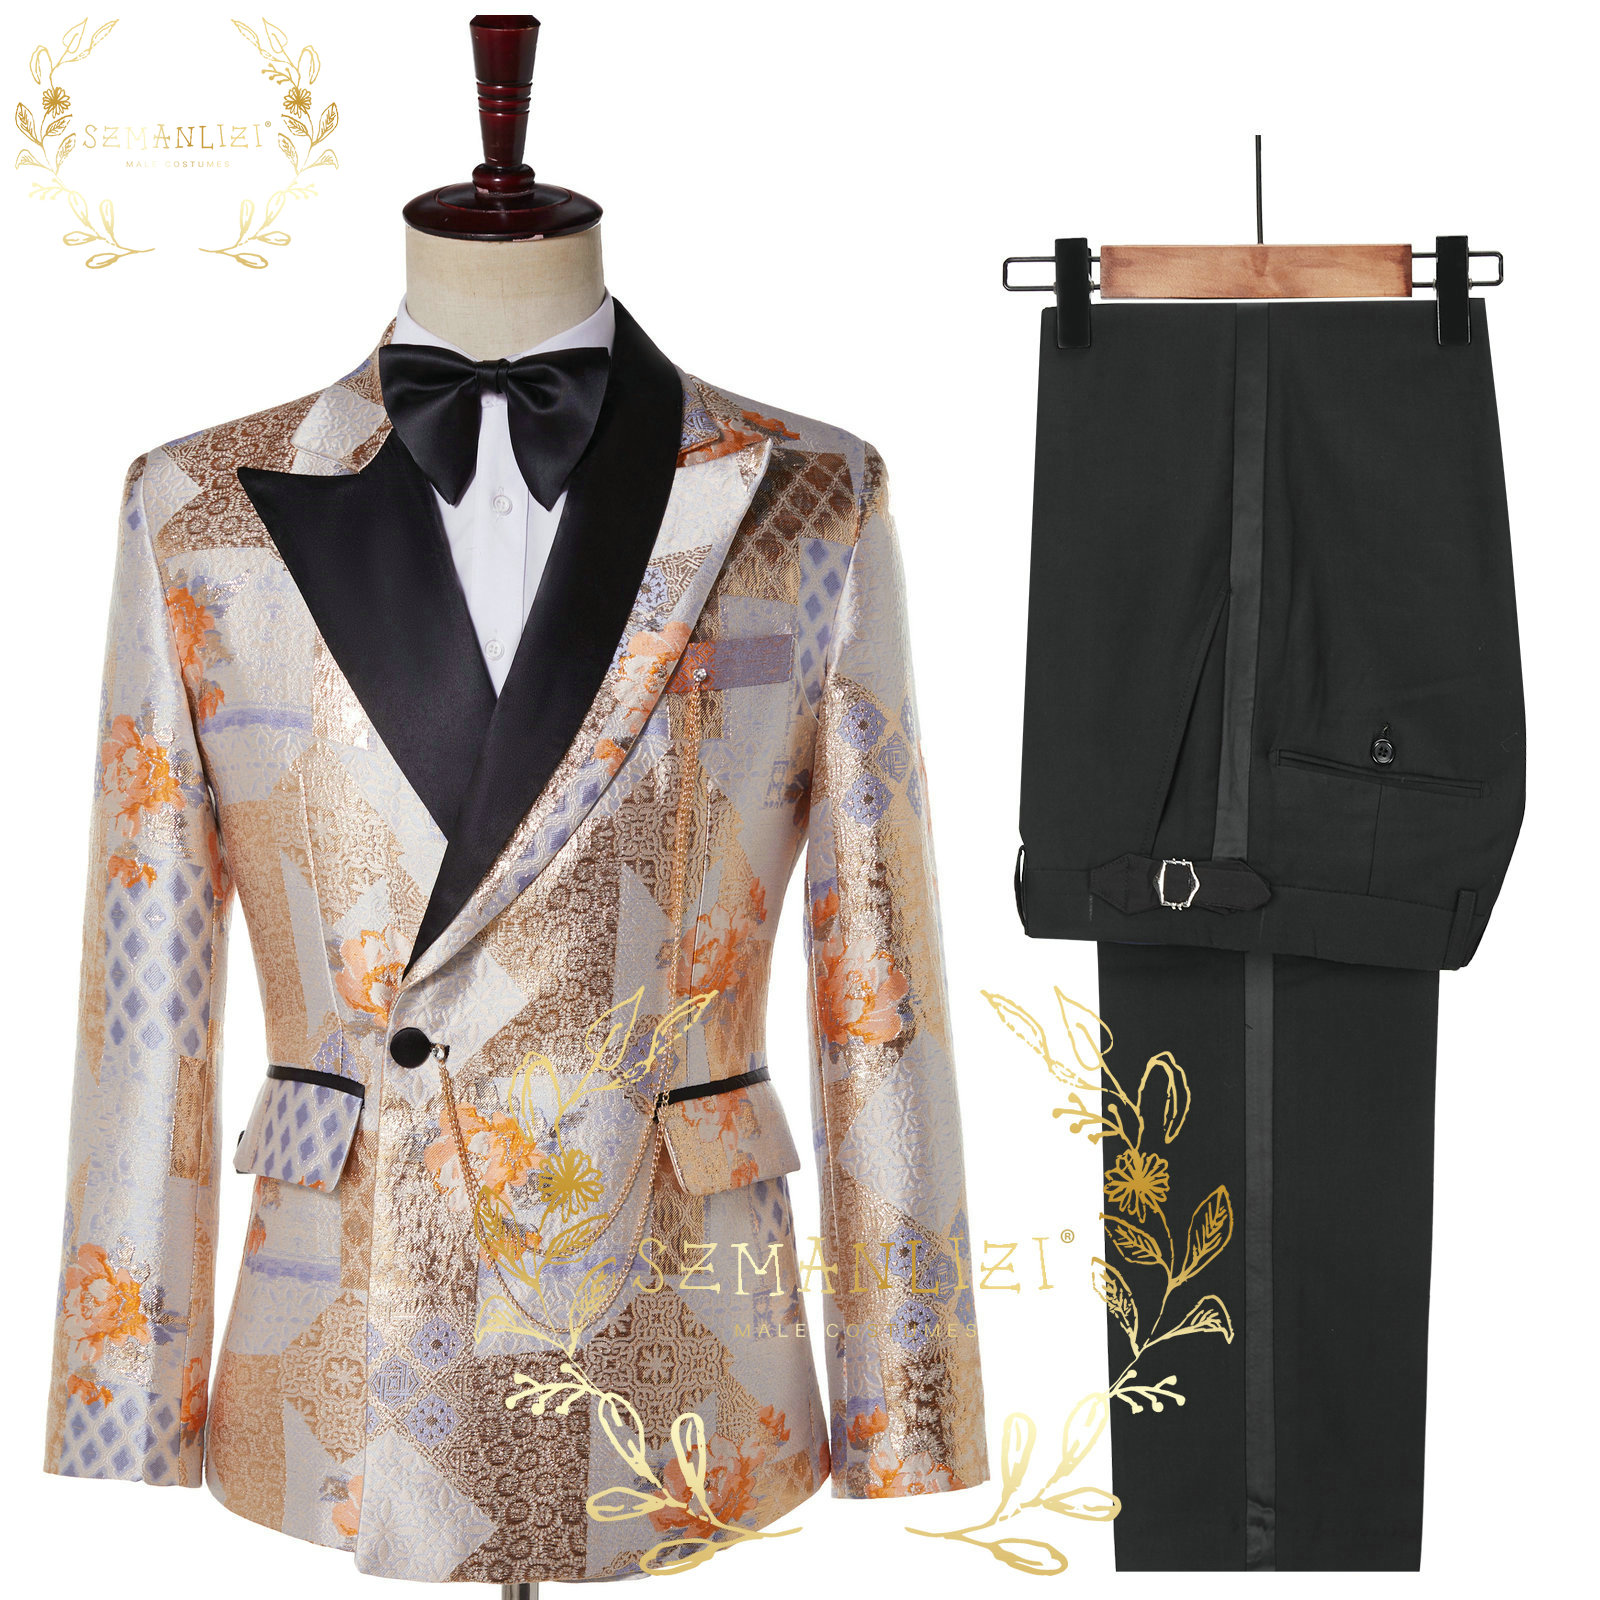 Szmanlizi 2022 guapo Últimos diseños Slim Fit Floral Jacket Party Txedos Vestido masculino Doble Bañado Boda Groom Trajes de los hombres